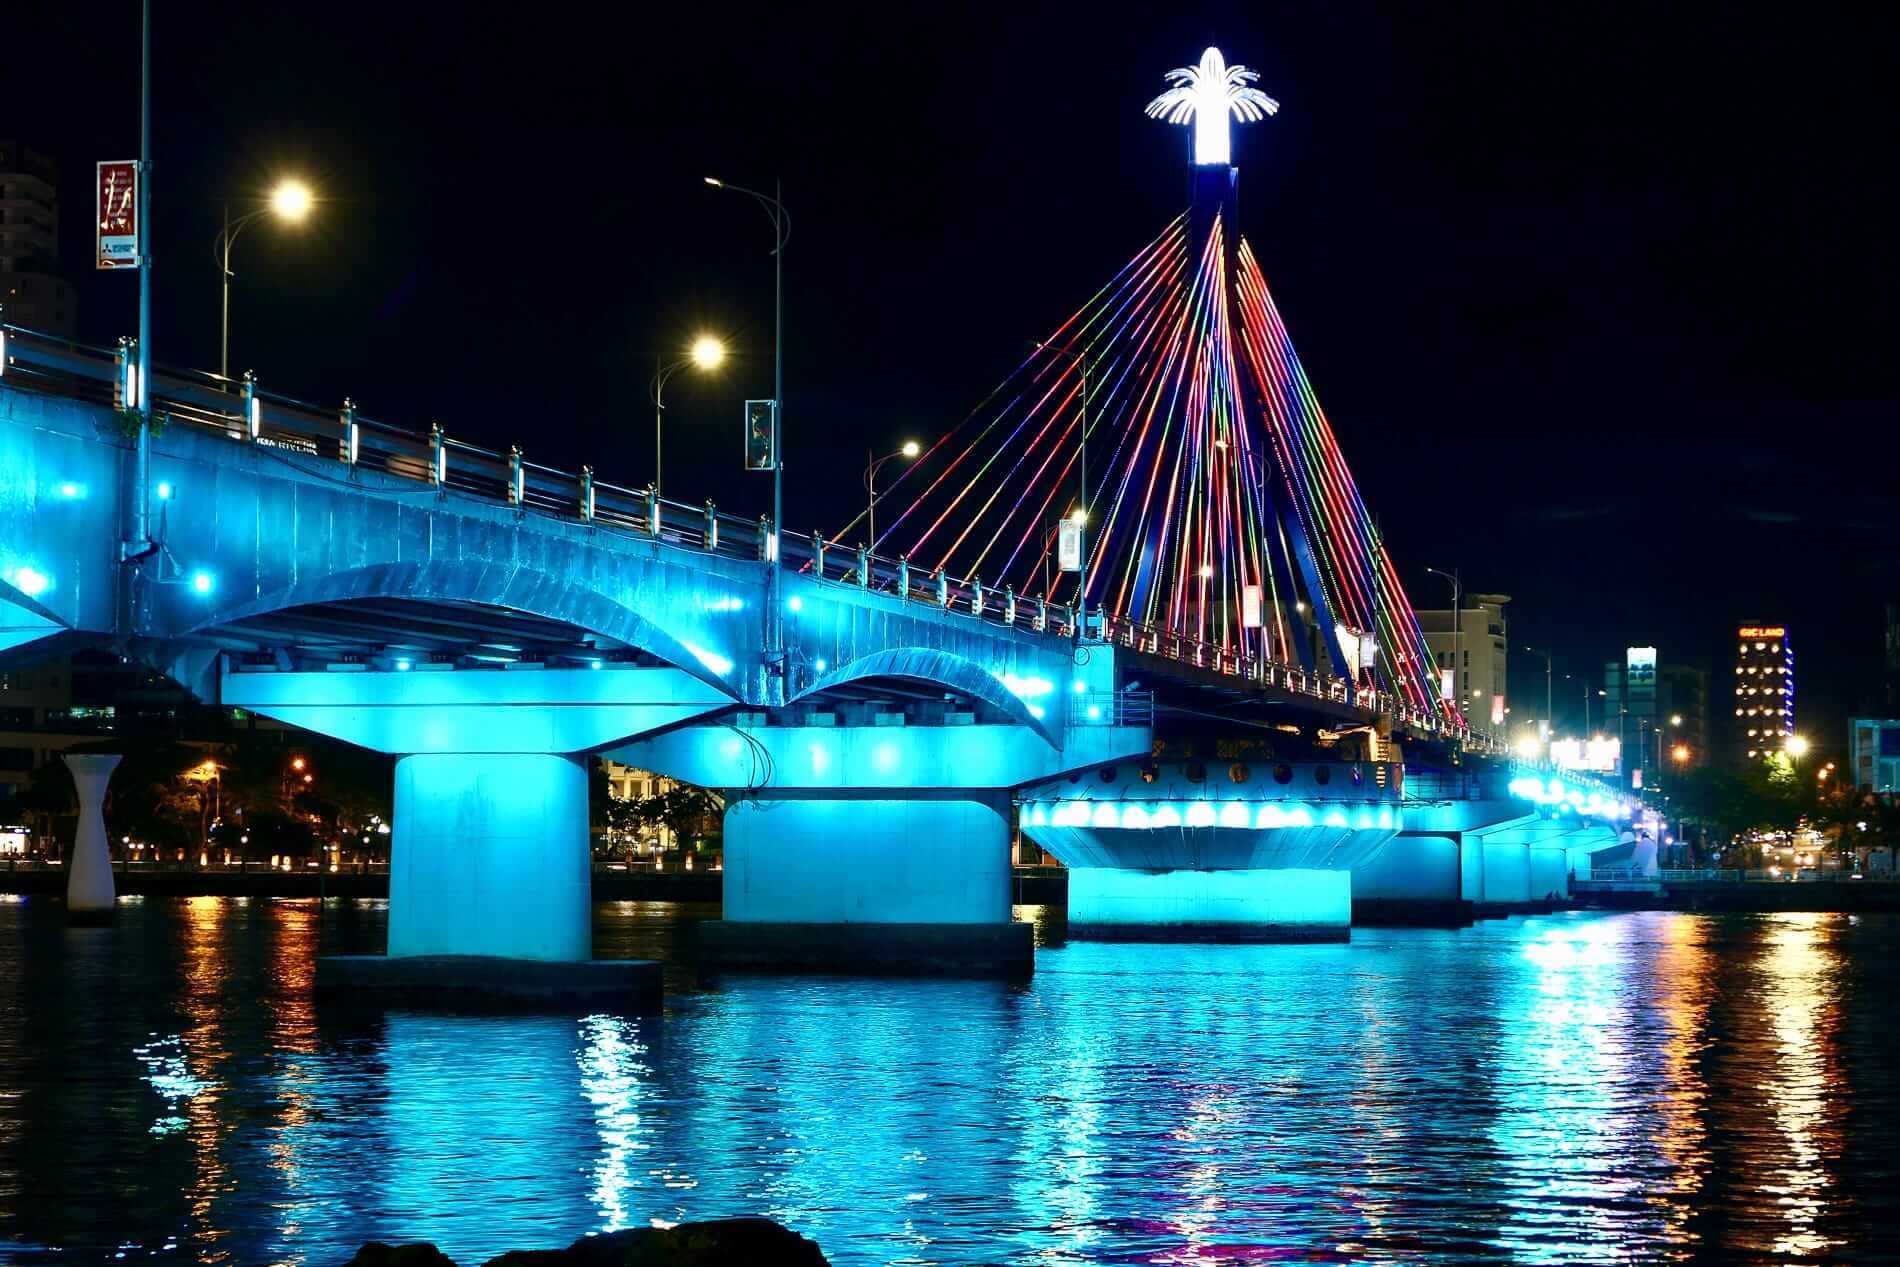 Cầu sông Hàn niềm tự hào của người dân thành phố Đà Nẵng  Vntripvn